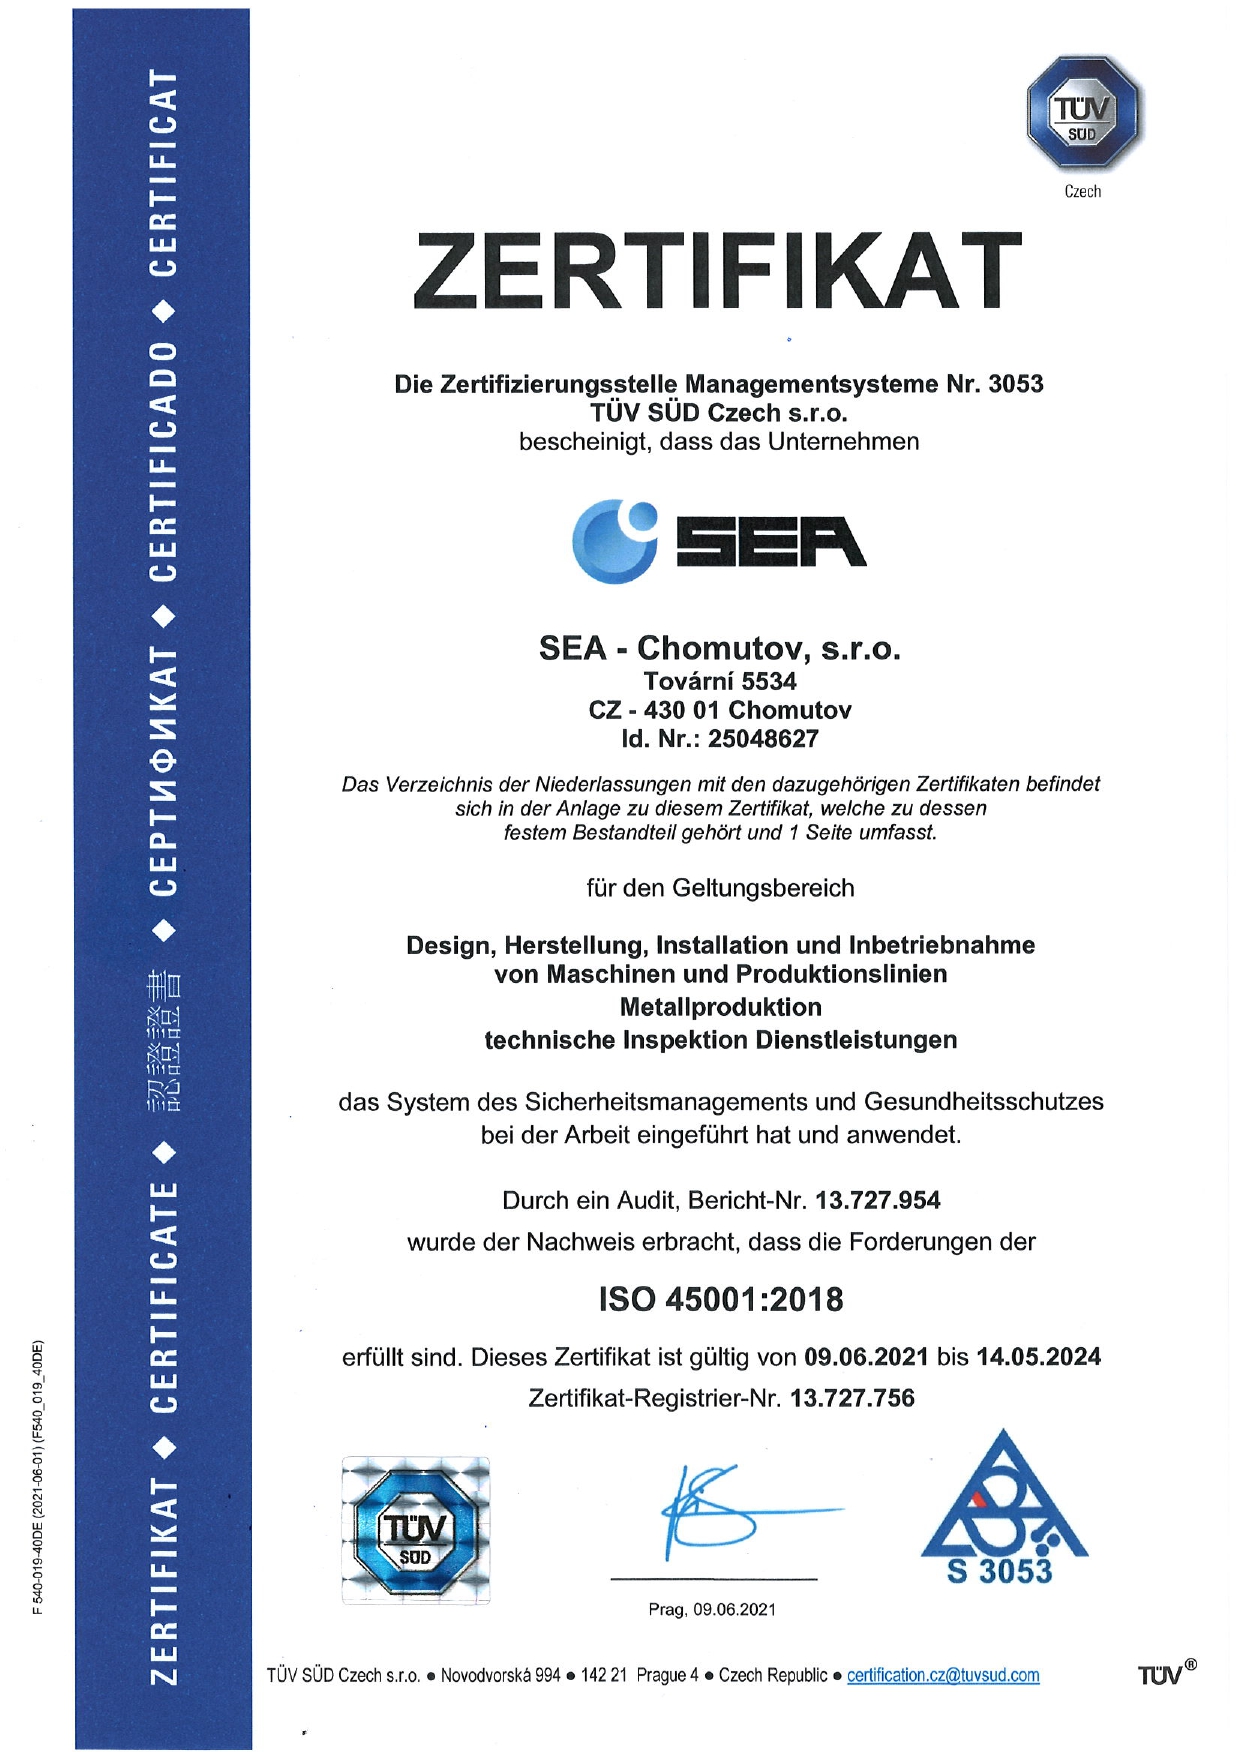 Zertifikat des Sicherheitsmanagements und Gesundheitsschutzes bei der Arbeit nach ISO 45001:2018